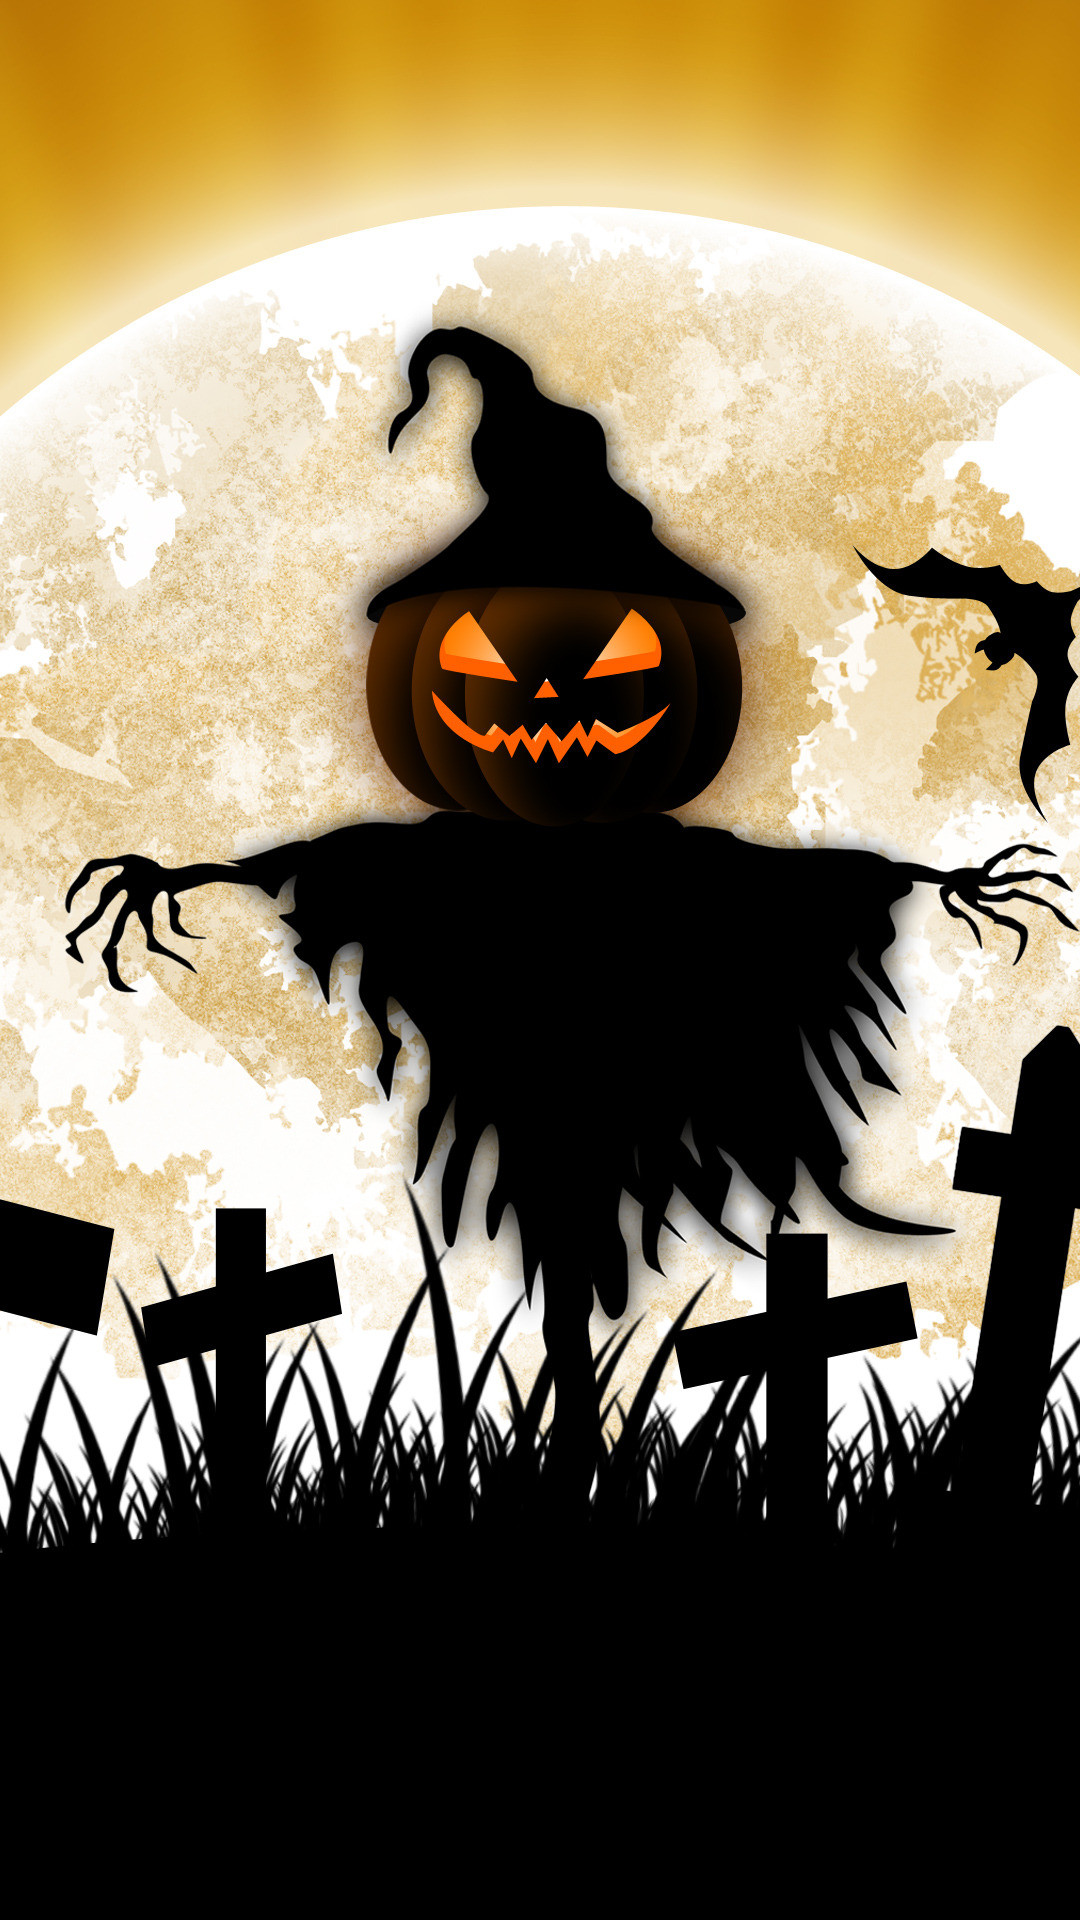 1080x1920 Scarecrow Halloween iphone wallpaper.